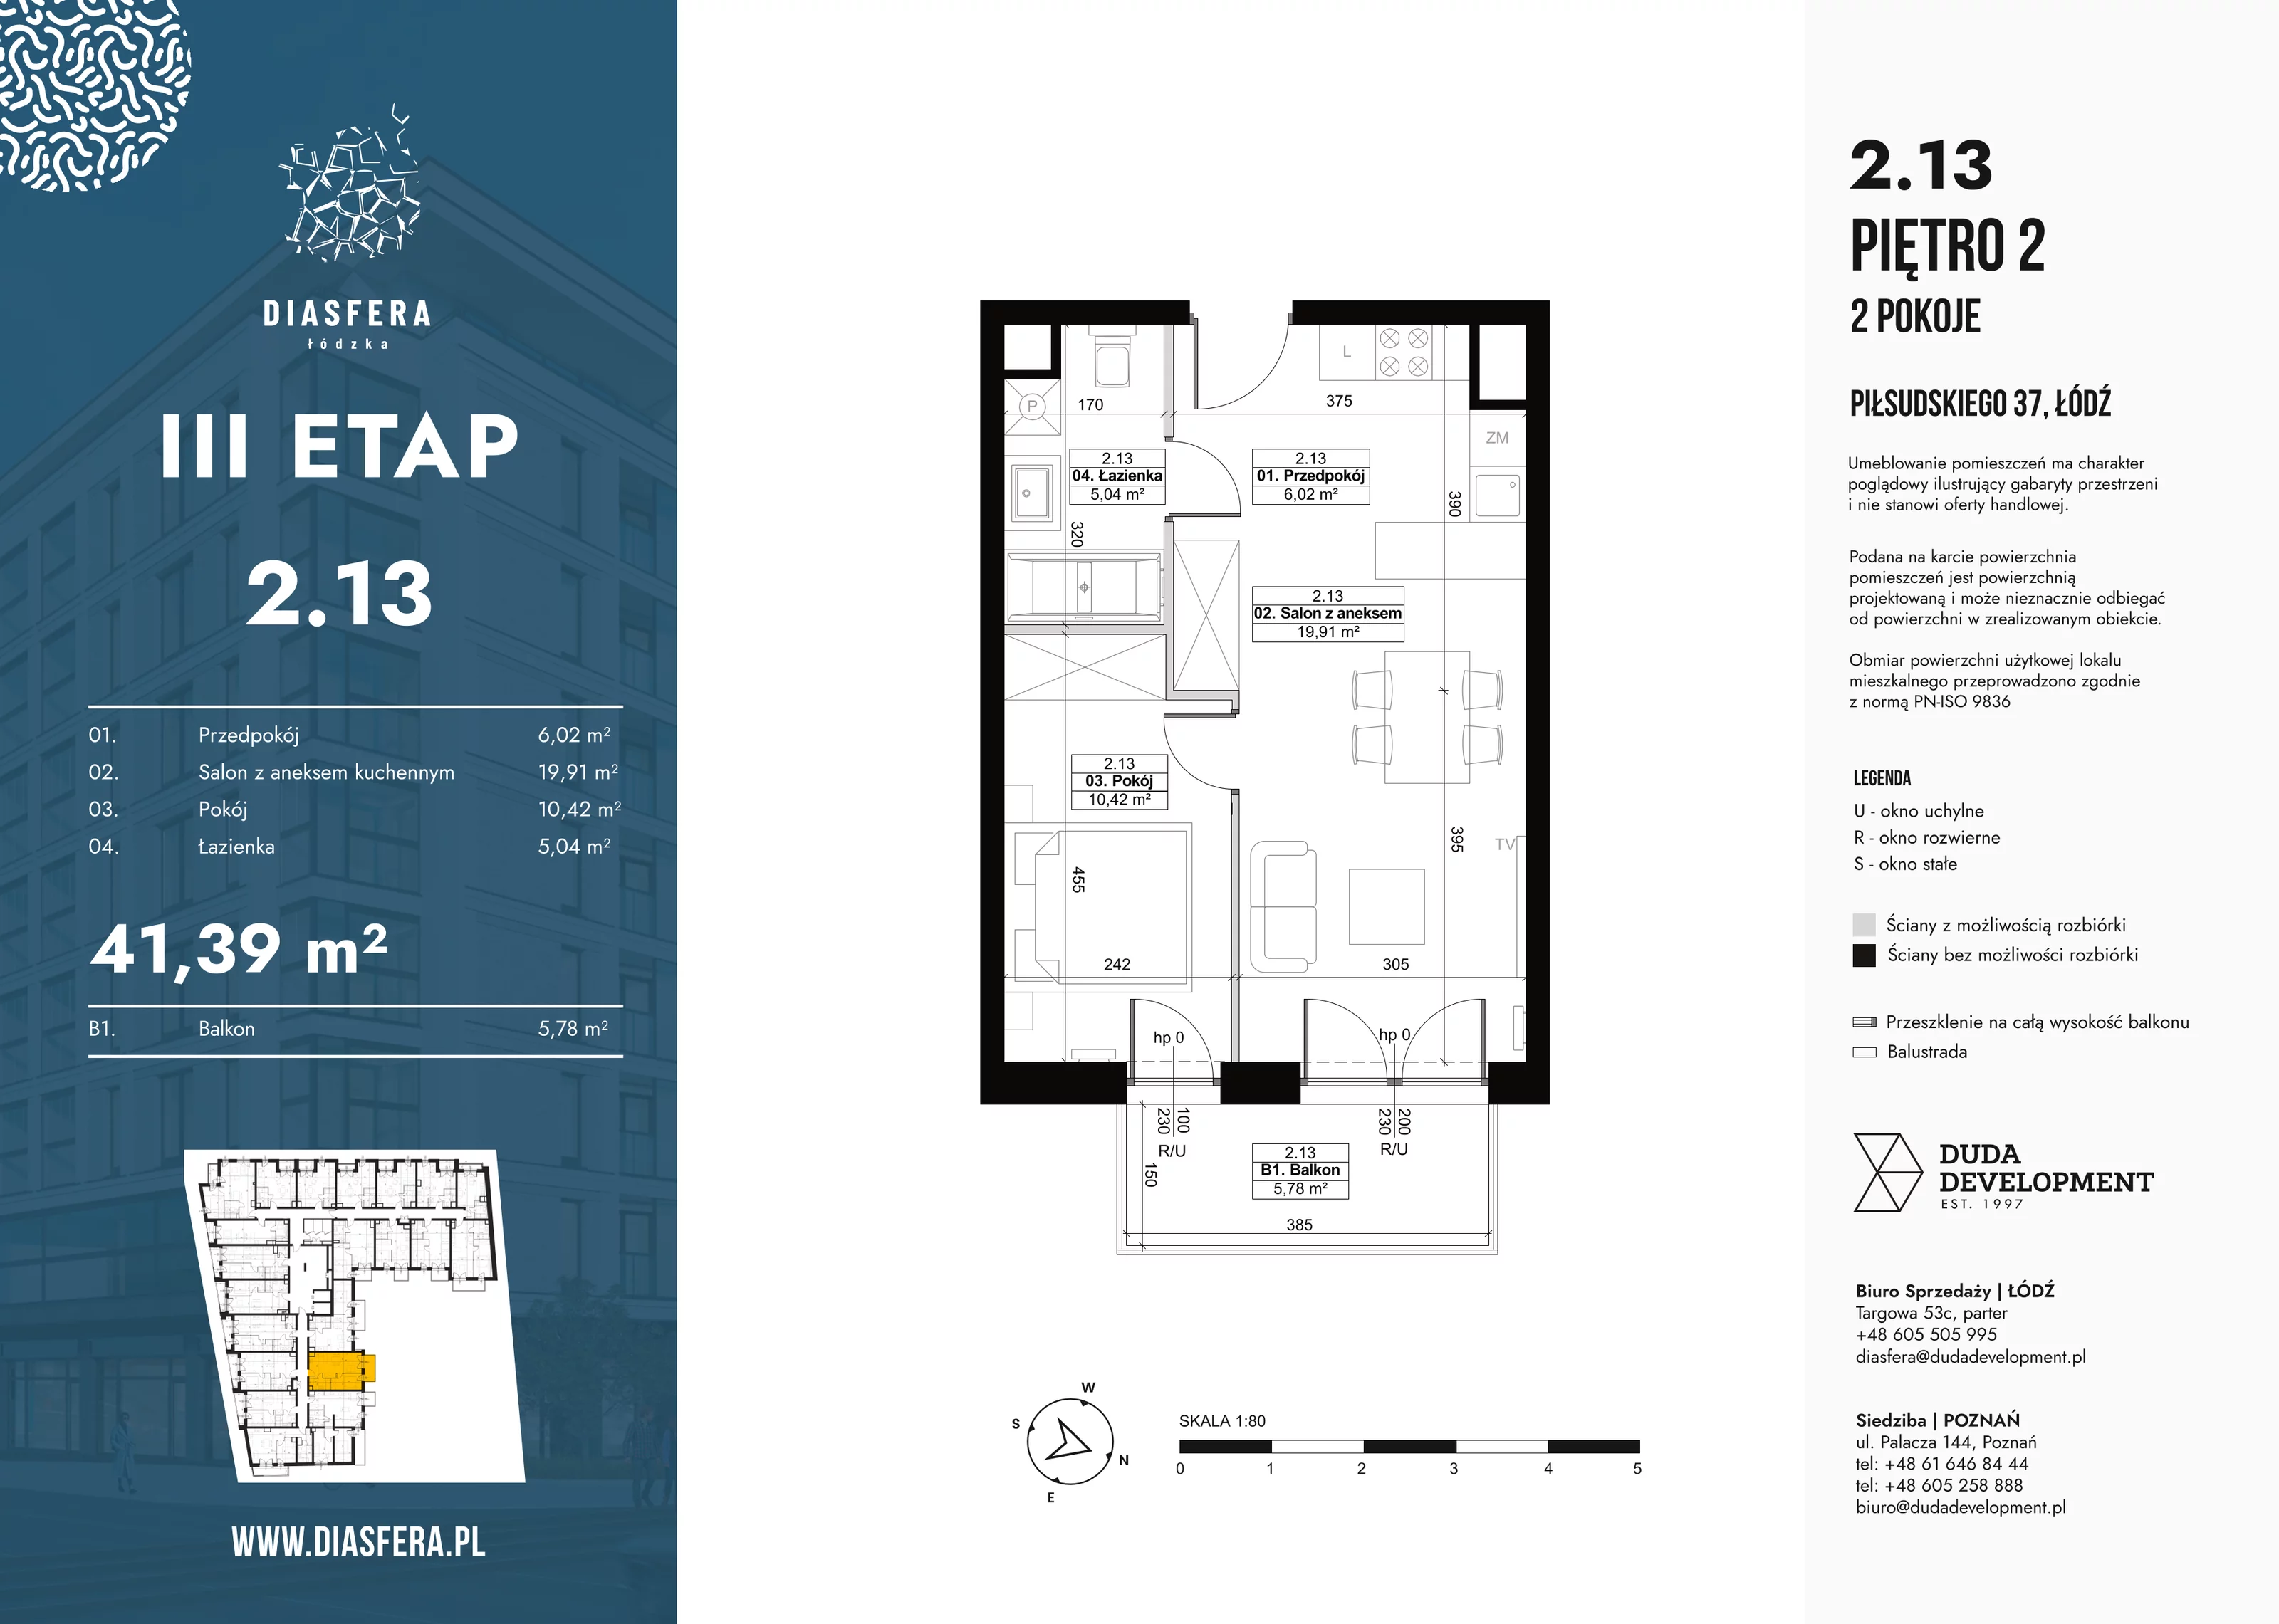 Mieszkanie 41,39 m², piętro 2, oferta nr 2_13, Diasfera III, Łódź, Śródmieście, al. Piłsudskiego 37